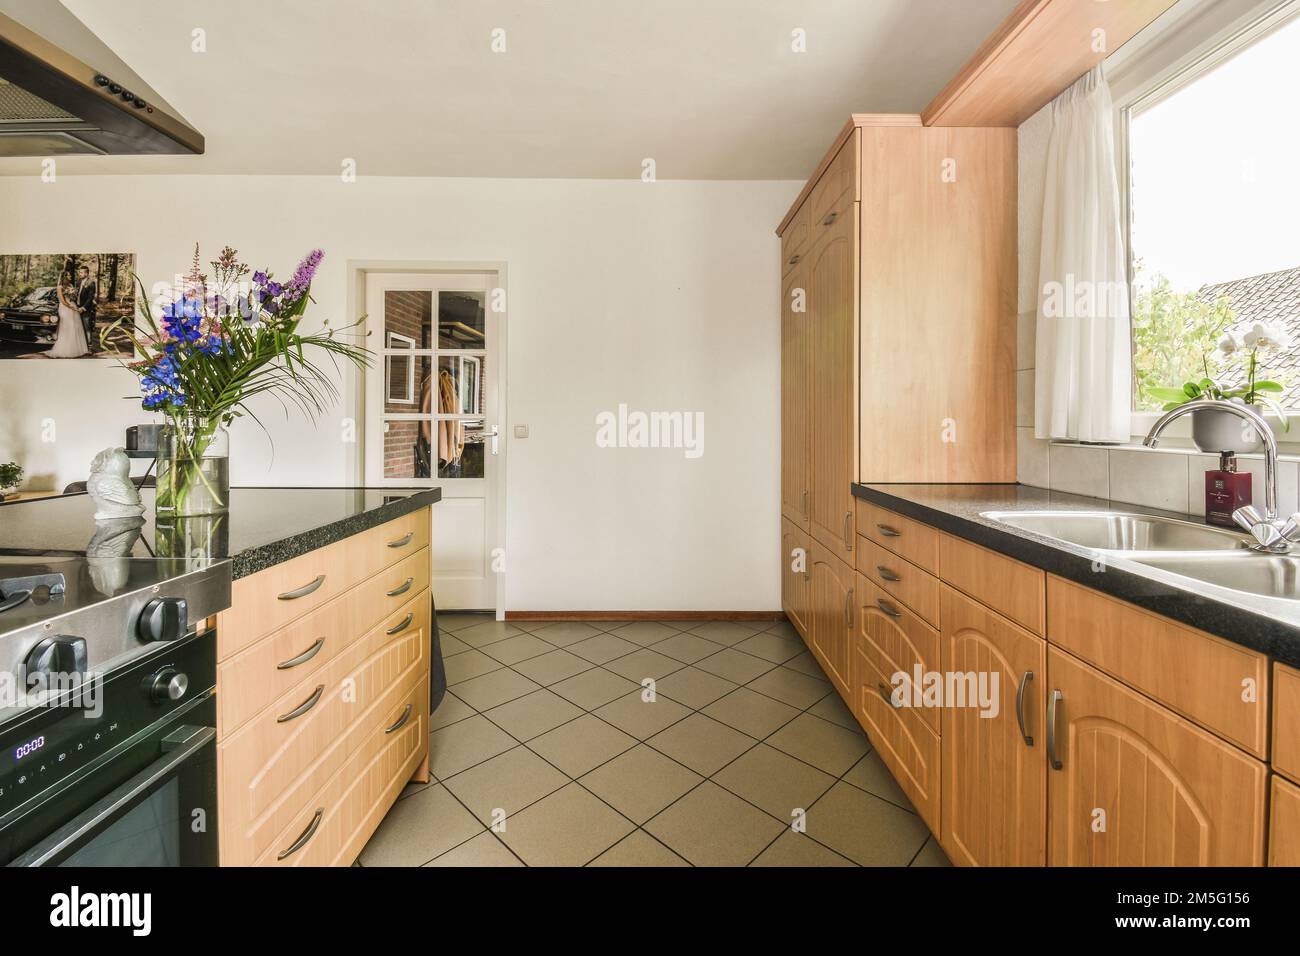 Pisos de vinilo y encimeras de pizarra en un noventa cocina con ventanales  al jardín Fotografía de stock - Alamy